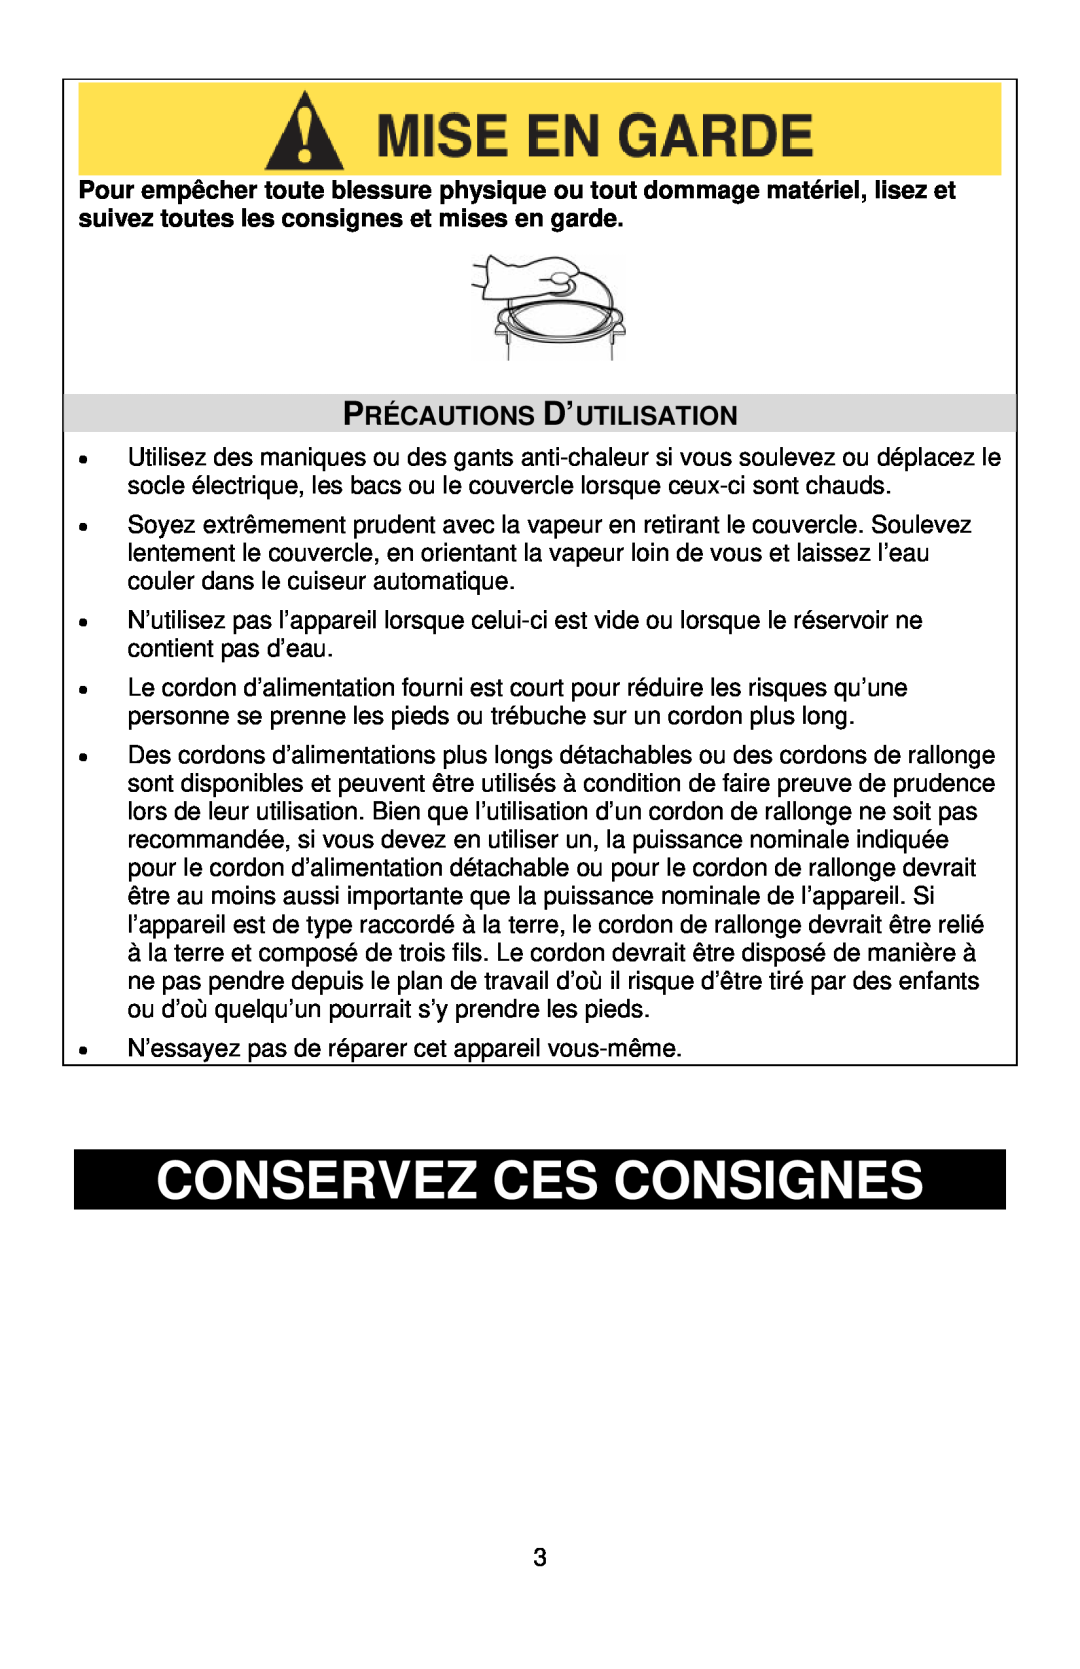 West Bend L5765, 86604CF instruction manual Conservez Ces Consignes, Précautions D’Utilisation 